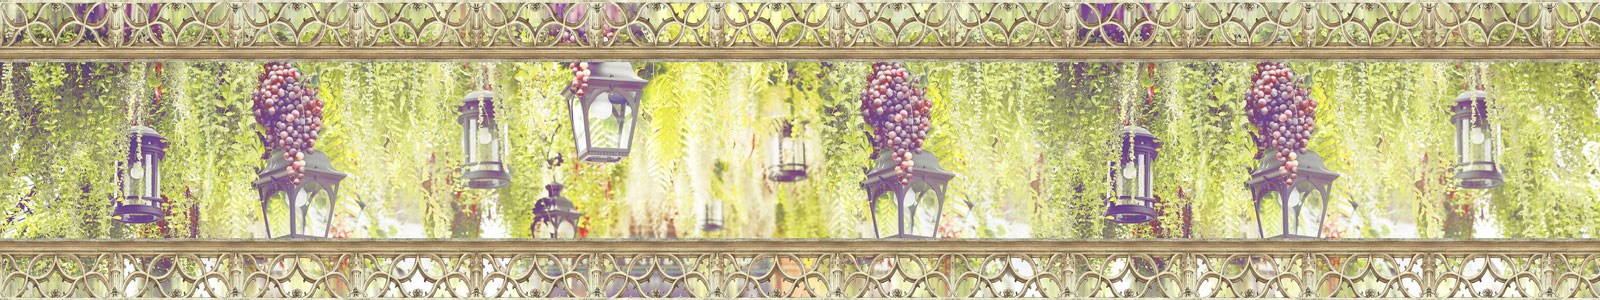 №5960 - Декорации с фонарями и гроздьями винограда в саду